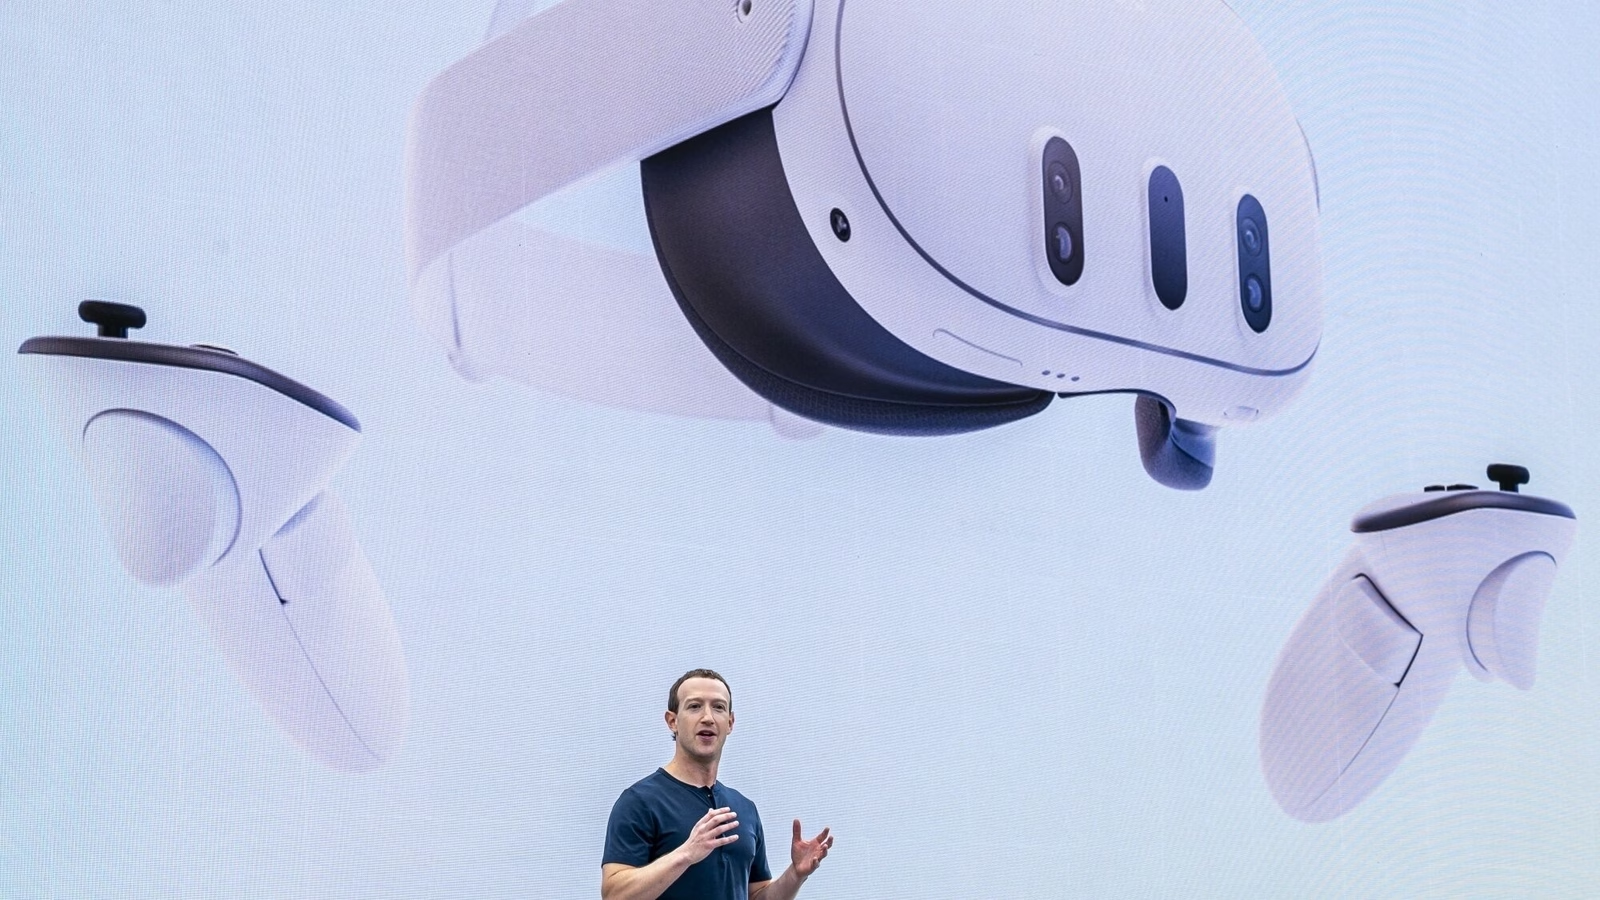 Zuckerberg veröffentlicht das erste MR-Headset! Das Leistungsdesign wurde erheblich verbessert. Nachdem ich es ausprobiert hatte, stellte ich fest, dass es sich völlig vom Apple Vision Pro unterscheidet. - 5000